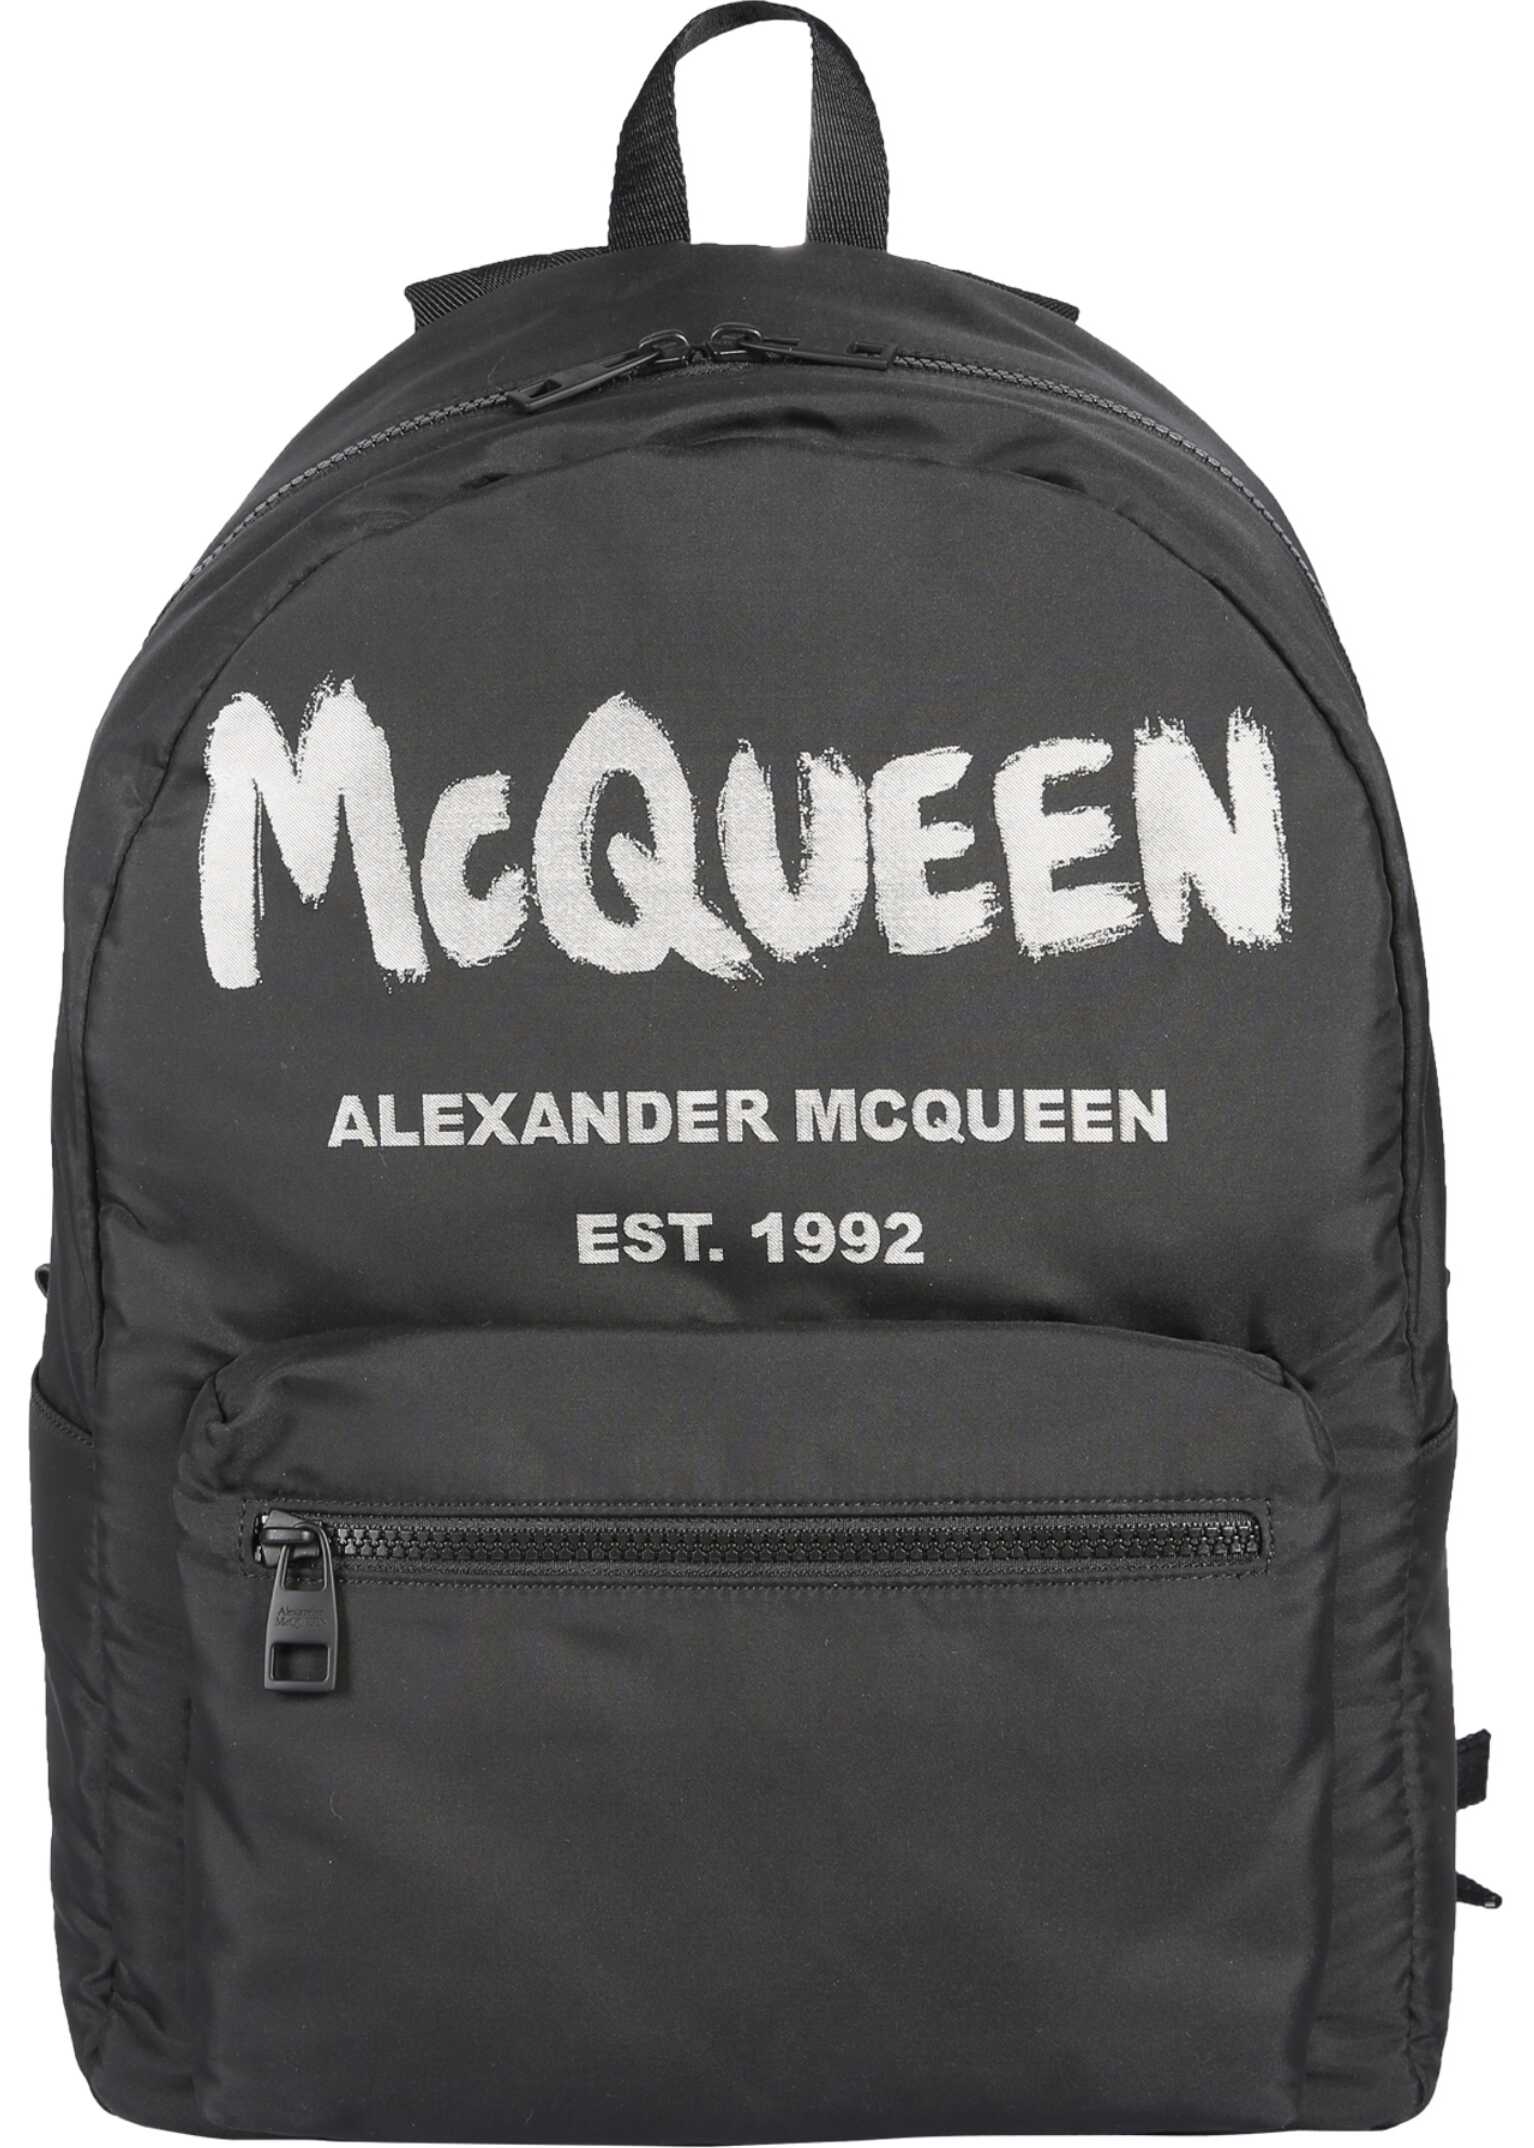 Alexander McQueen Metropolitan Backpack BLACK Alexander McQueen